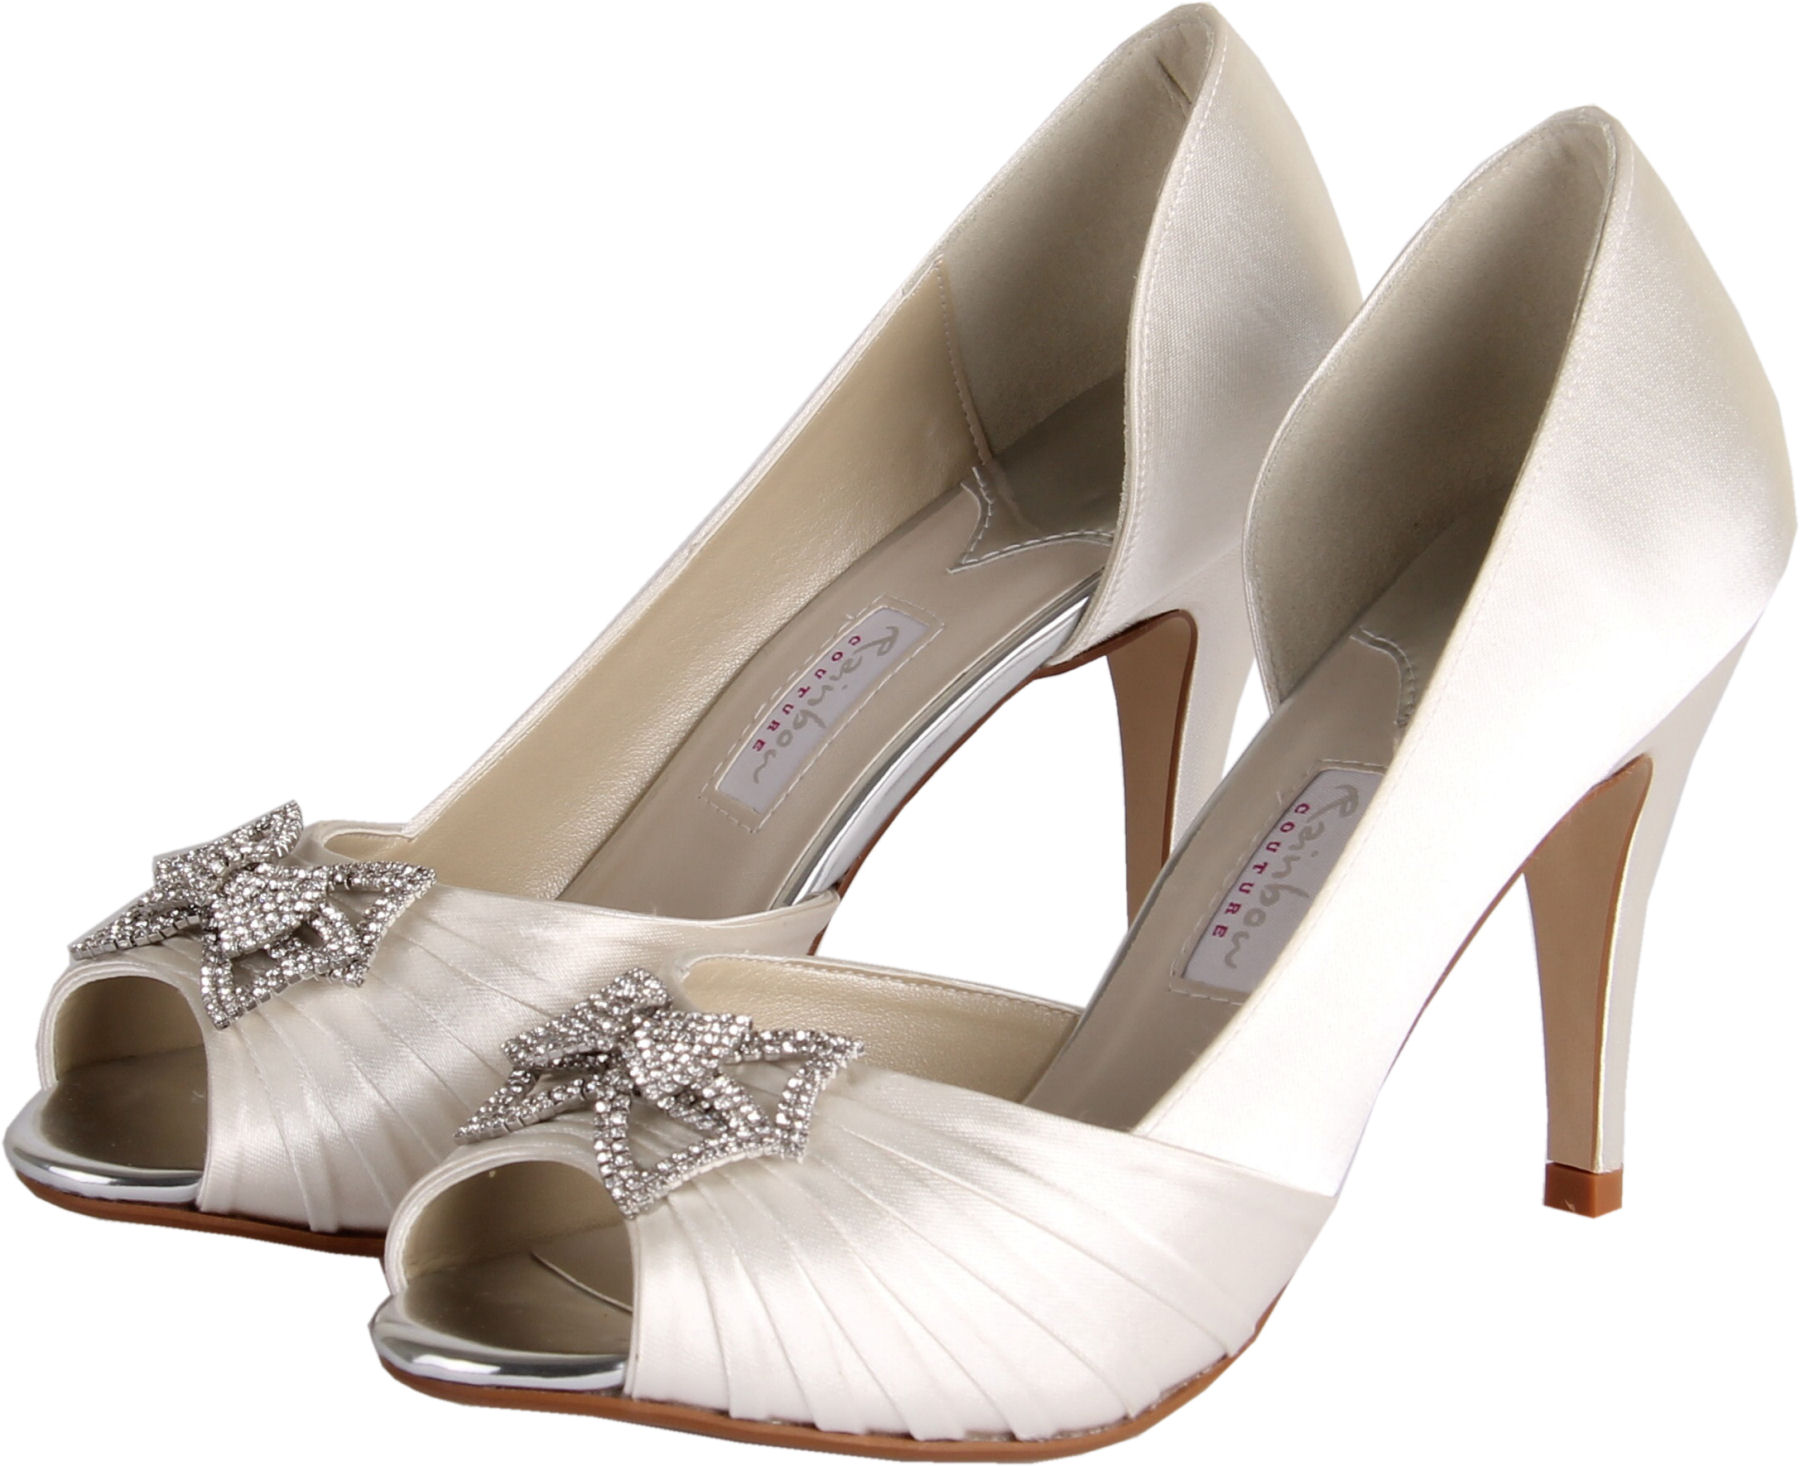 Rainbow Bridal Shoes chiara · more details · wedding shoes by rainbow ... KPKLQQB